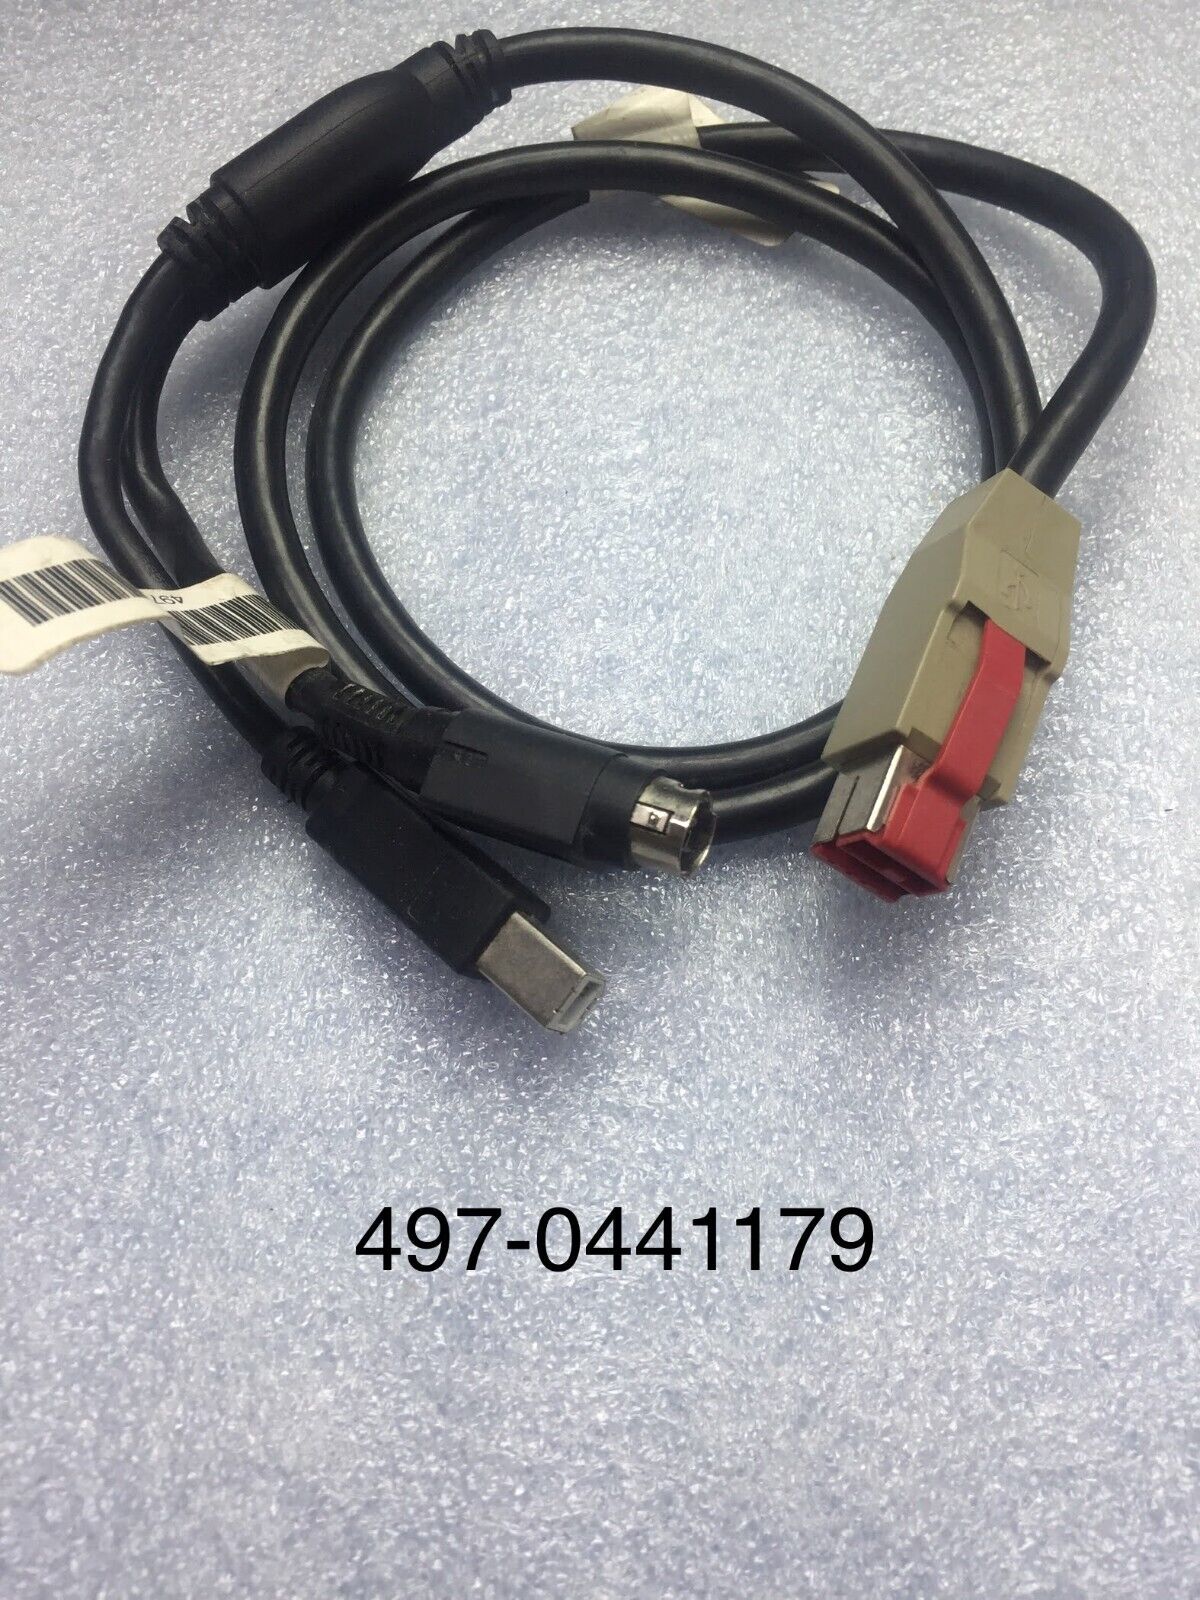 LOT 3 PCS NCR PTR 24V POWER USB CABLE 1M Grade B 497-0441179